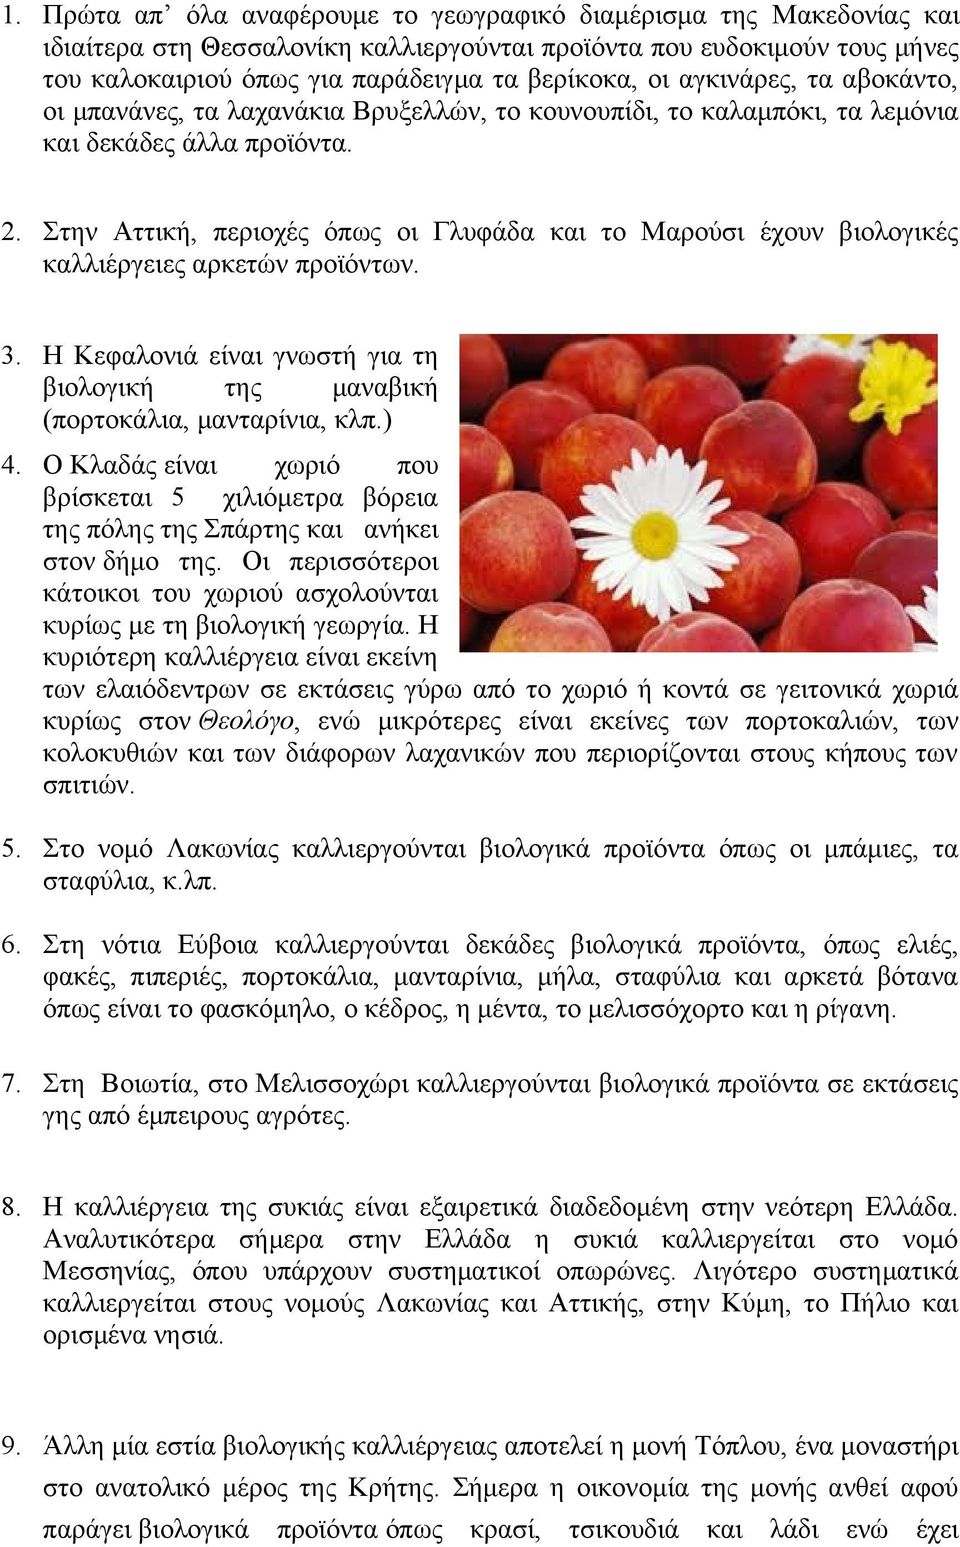 Στην Αττική, περιοχές όπως οι Γλυφάδα και το Μαρούσι έχουν βιολογικές καλλιέργειες αρκετών προϊόντων. 3. Η Κεφαλονιά είναι γνωστή για τη βιολογική της μαναβική (πορτοκάλια, μανταρίνια, κλπ.) 4.